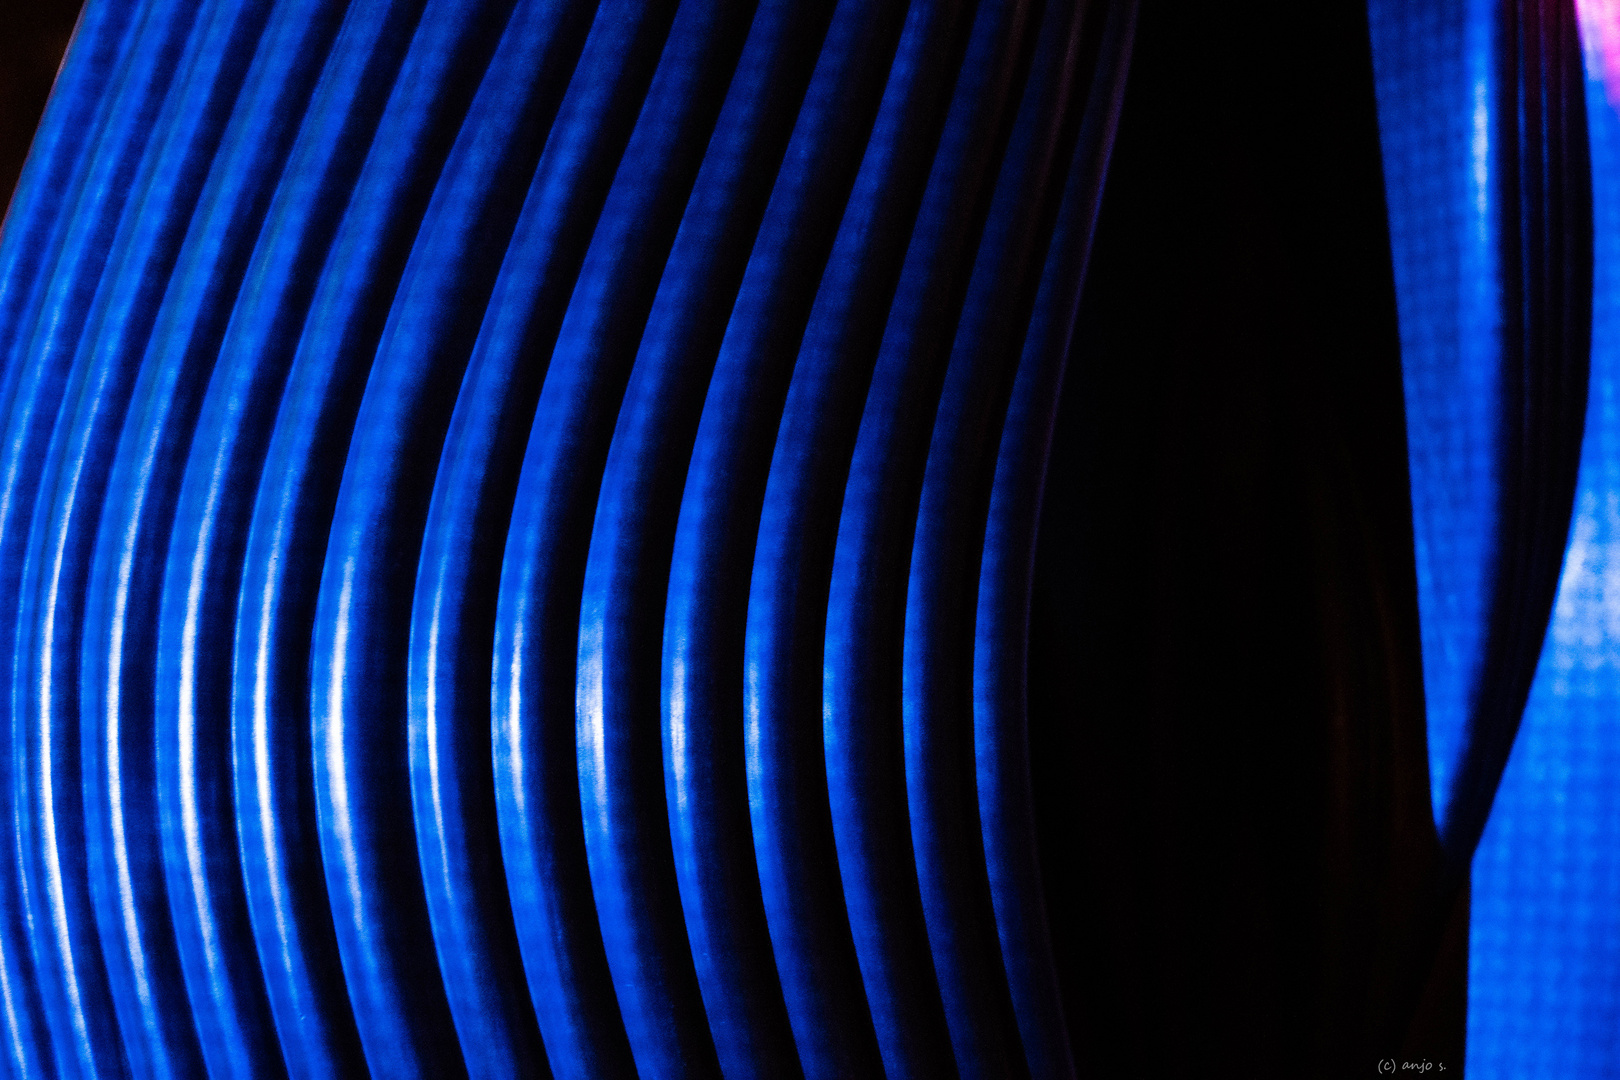 Skulpturendetail im blauen Laserlicht